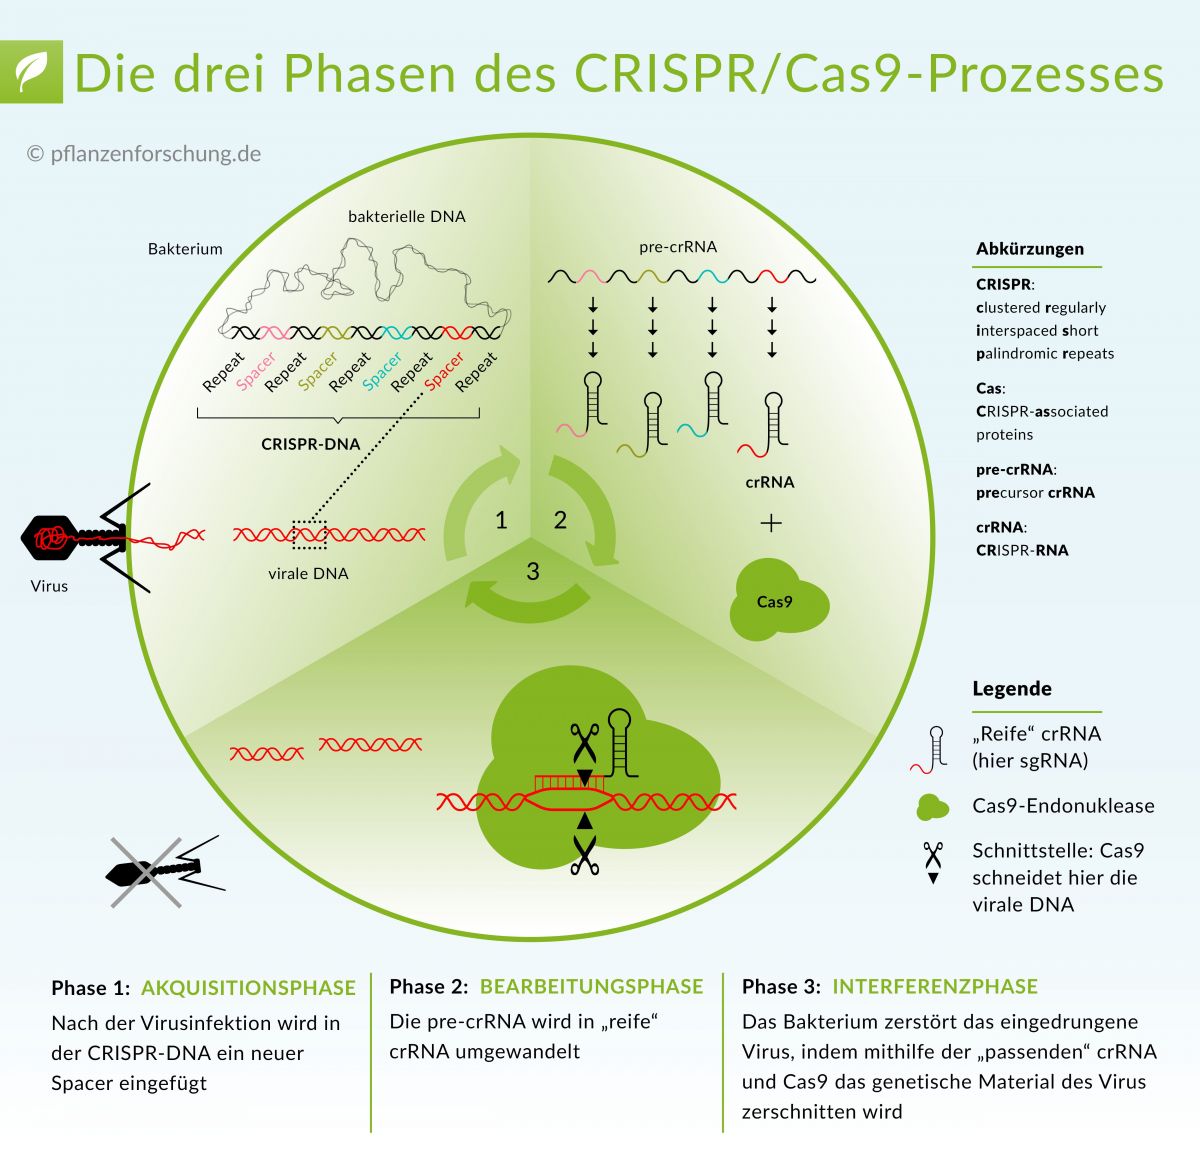 Ursprünglich verbirgt sich hinter CRISPR/Cas9 ein Schutzmechanismus prokaryotischer Zellen, der dazu dient, Nukleinsäuren eines Eindringlings zu zerstören.
